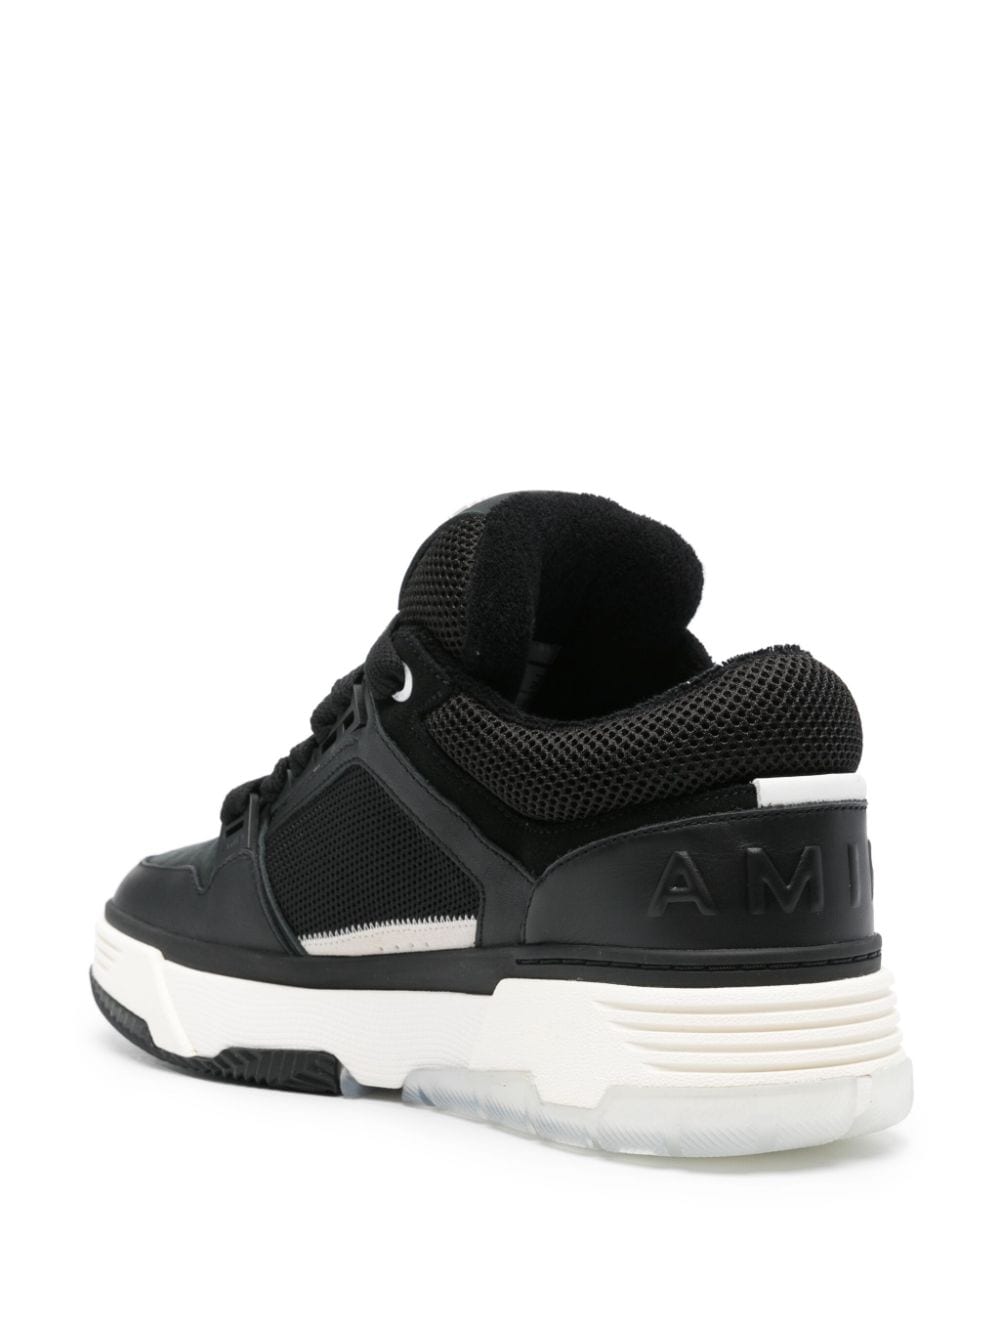 Amiri MA-1 Sneakers Black